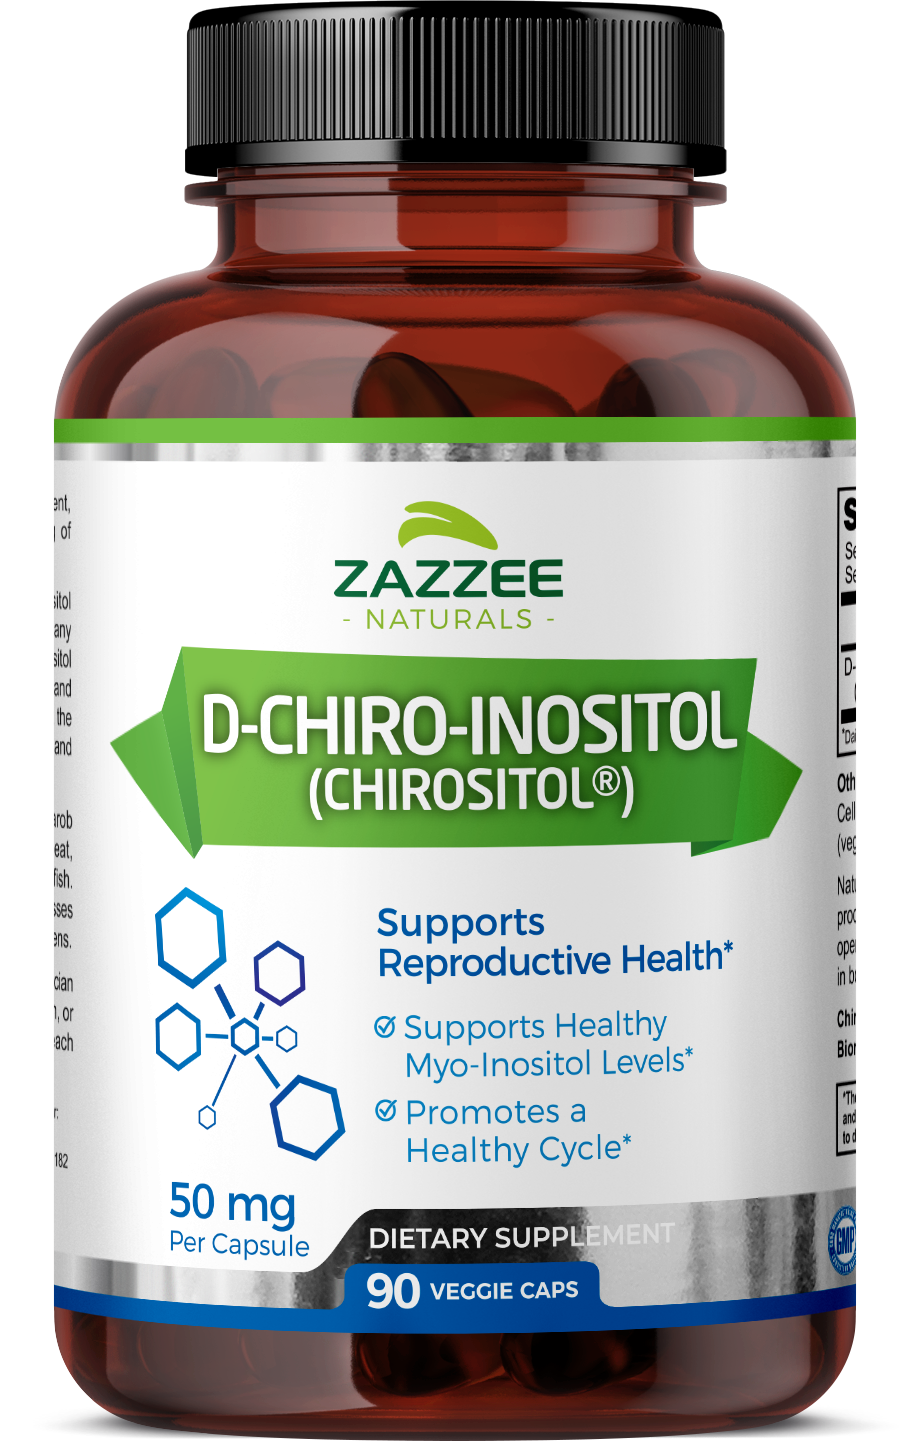 D-Chiro-Inositol